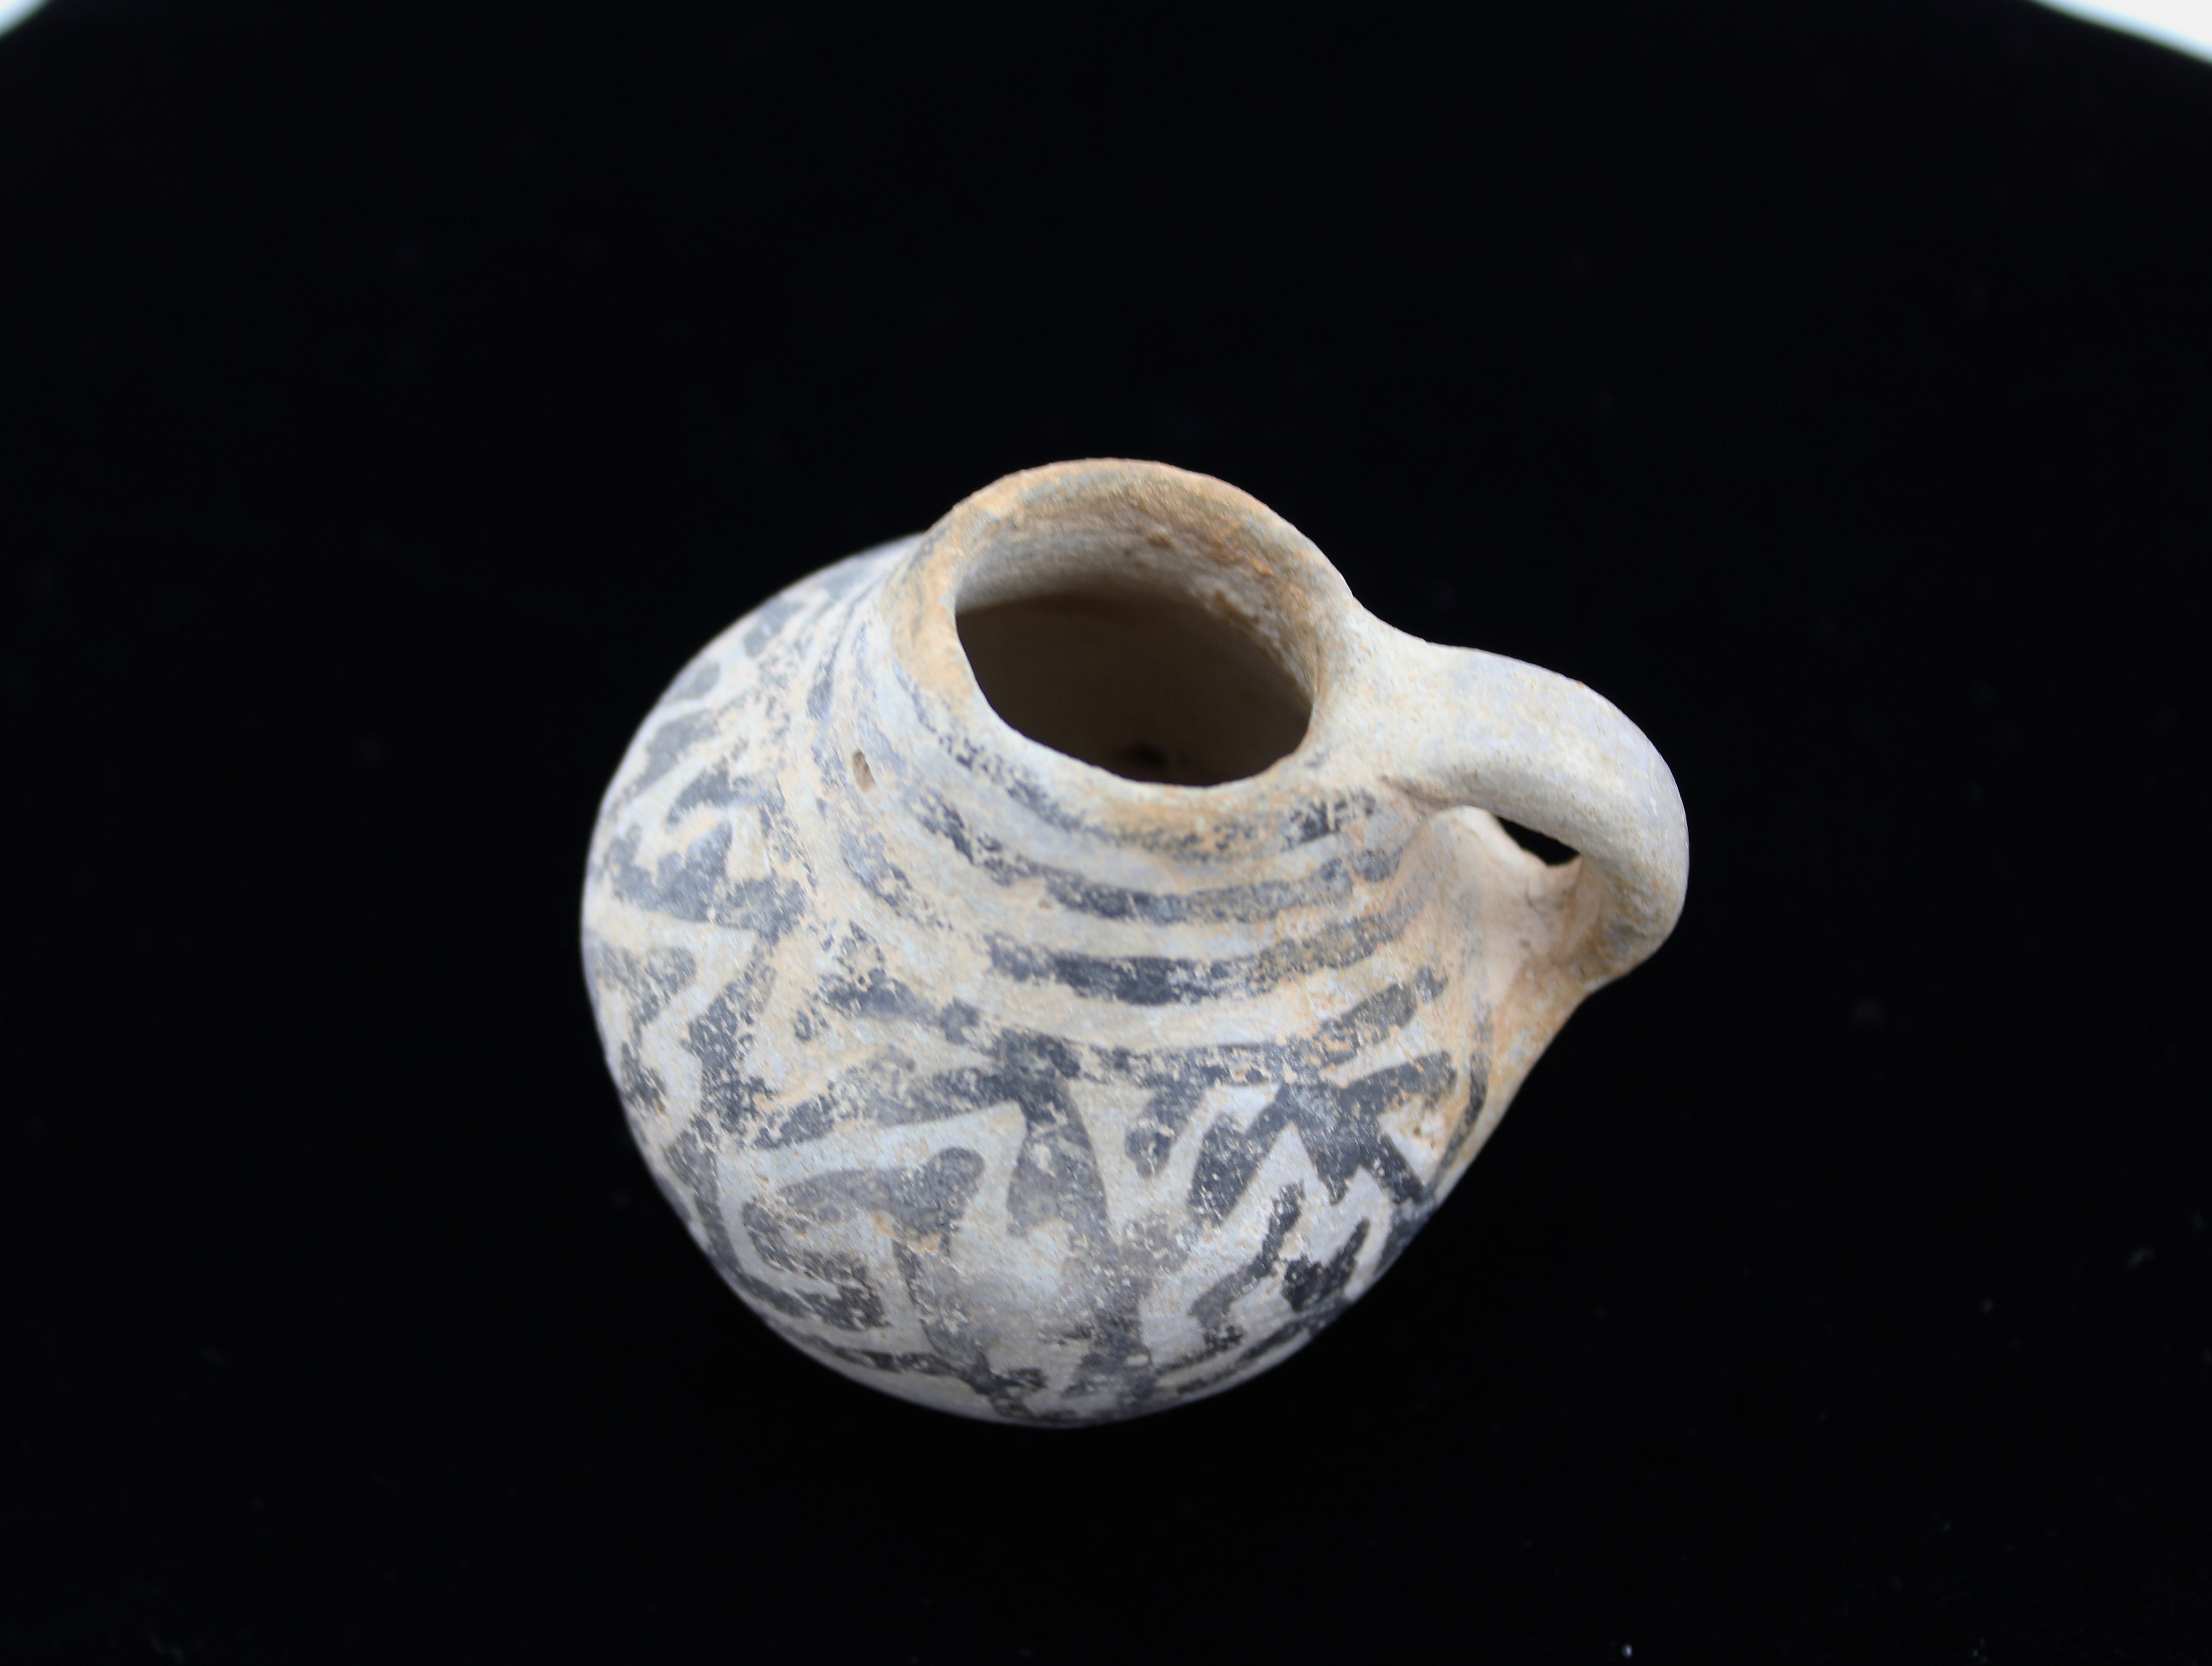 Miniature Pre-Historic Anasazi Pottery Cup